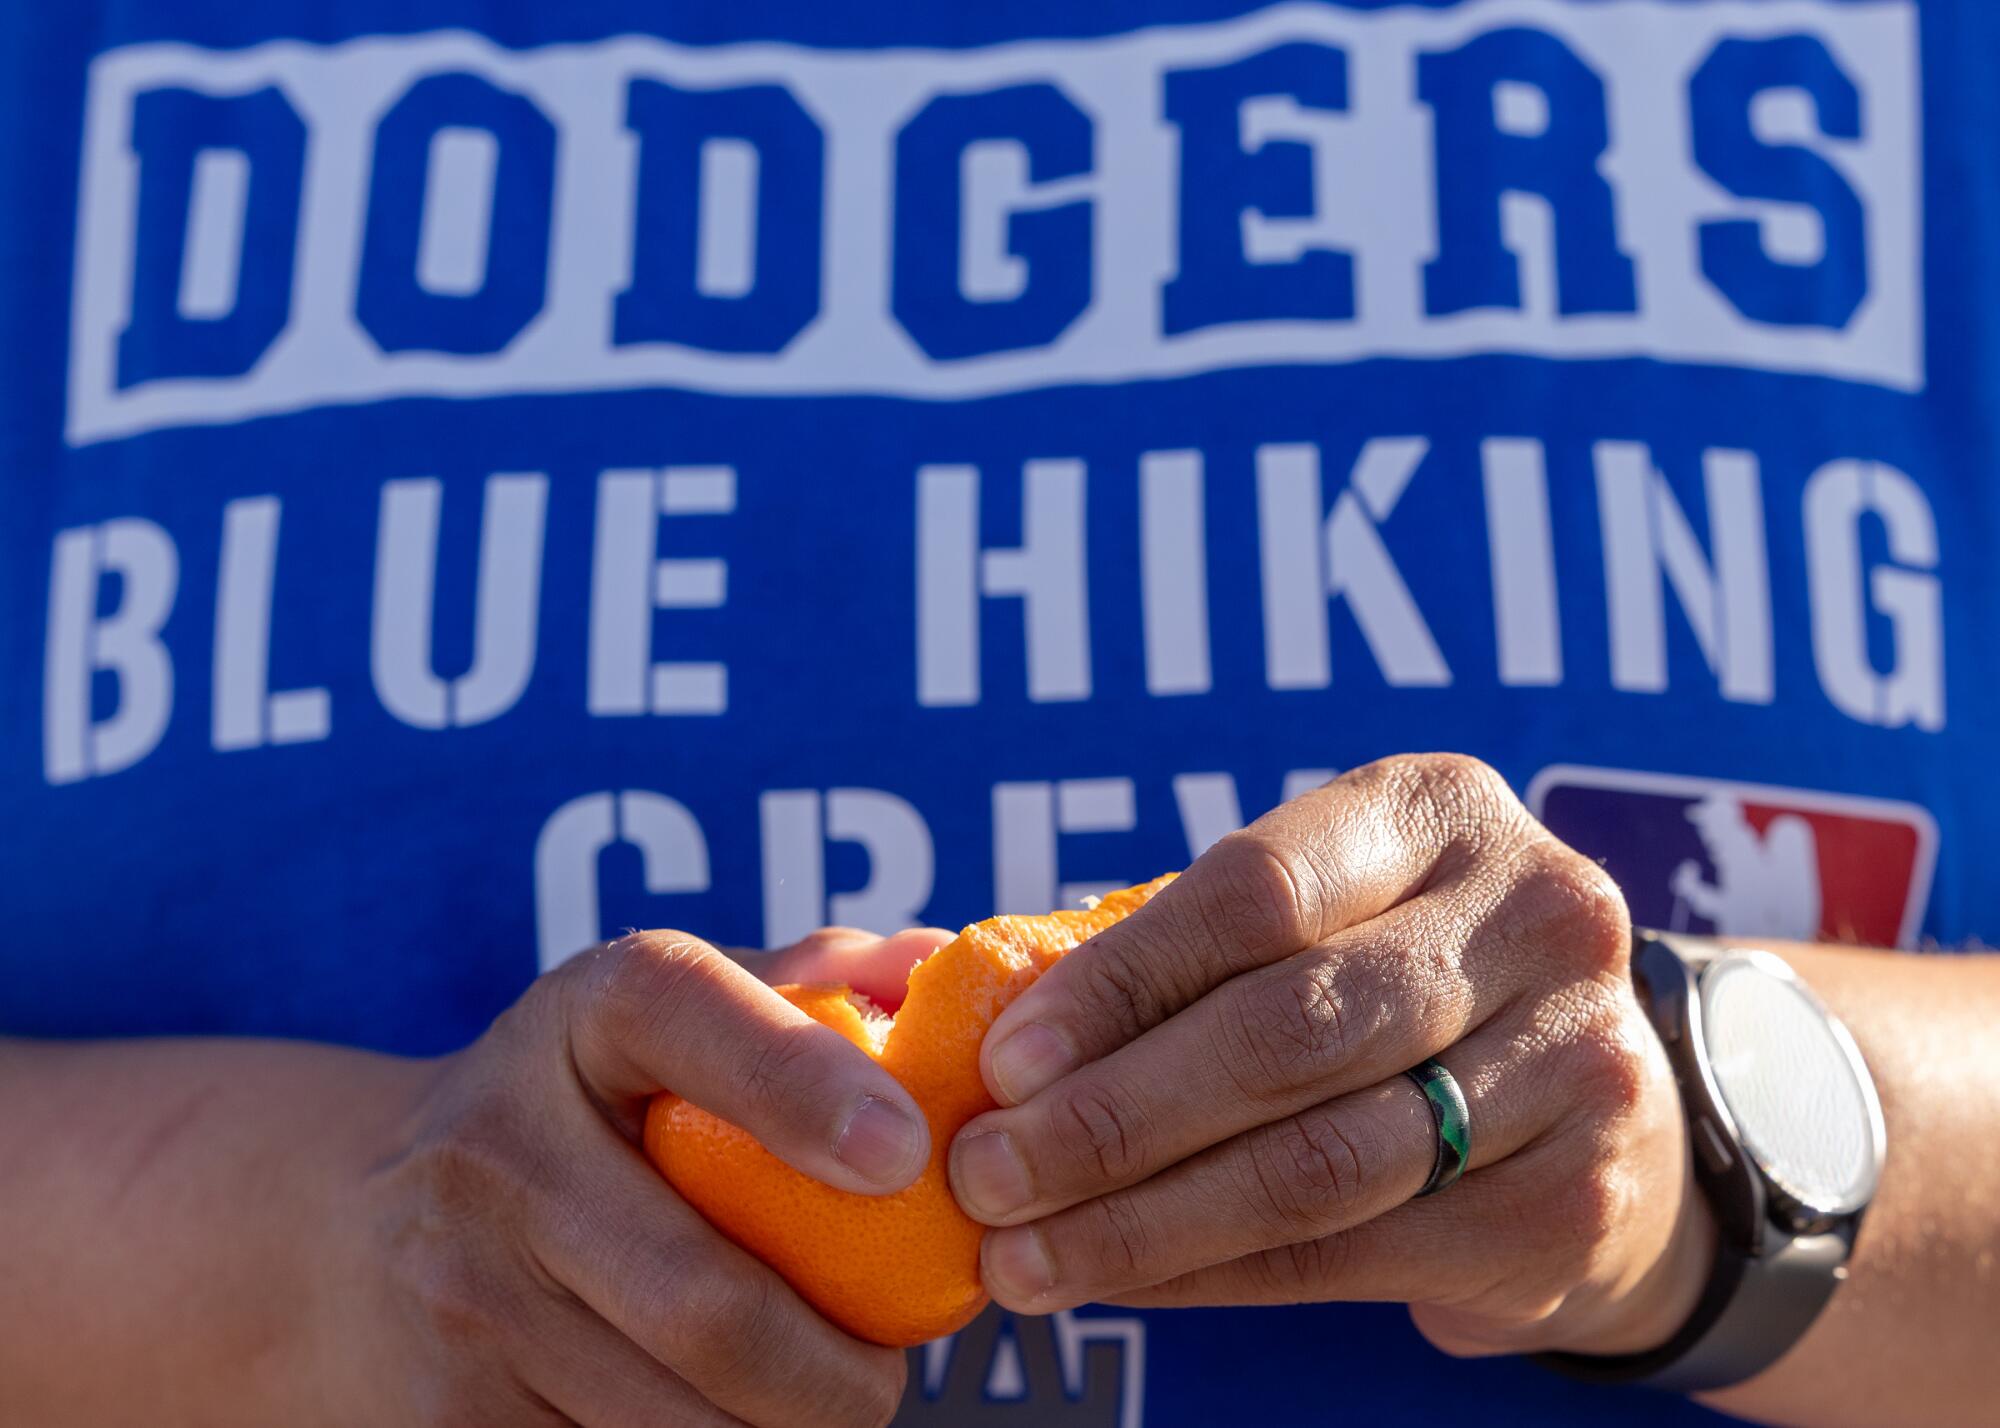 Турист в фирменной сувенирной продукции Dodgers Blue Hiking Crew делает перерыв, чтобы почистить мандариновую закуску.